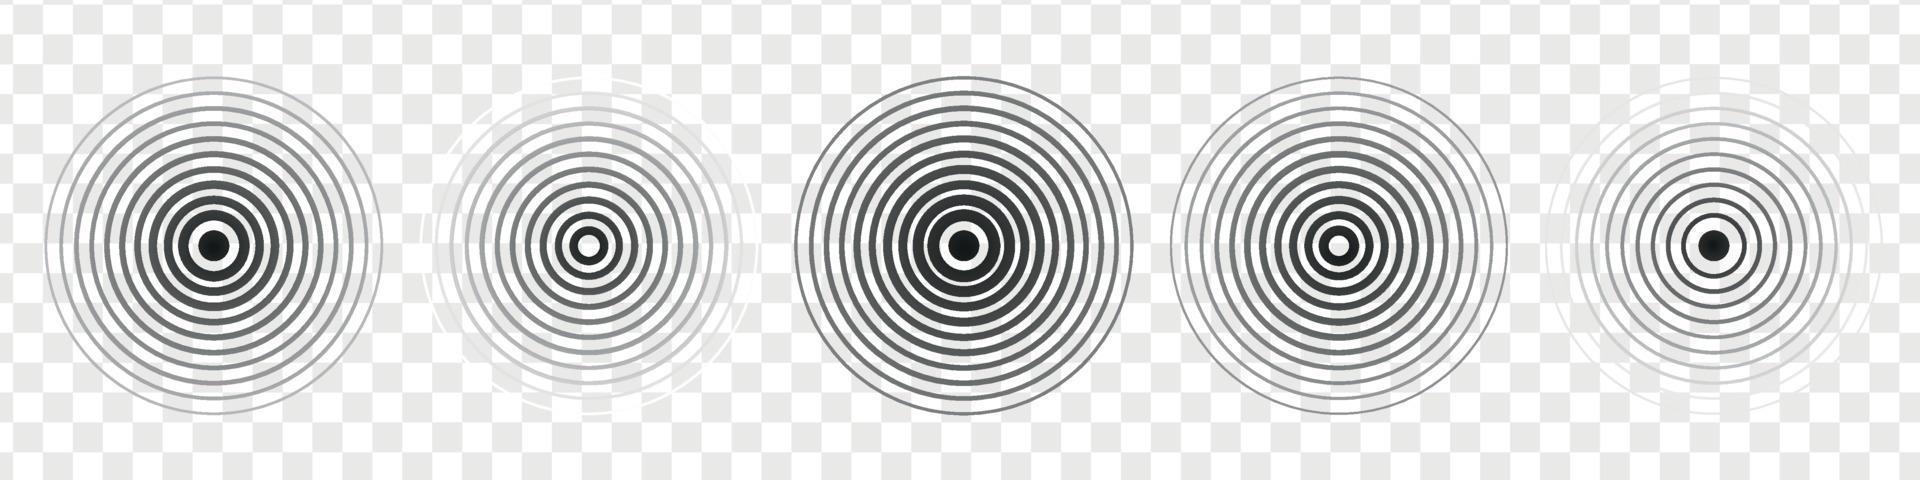 onda de sonido de sonar. círculo concéntrico de la señal. Señal radial de vibraciones. ilustración vectorial aislada vector